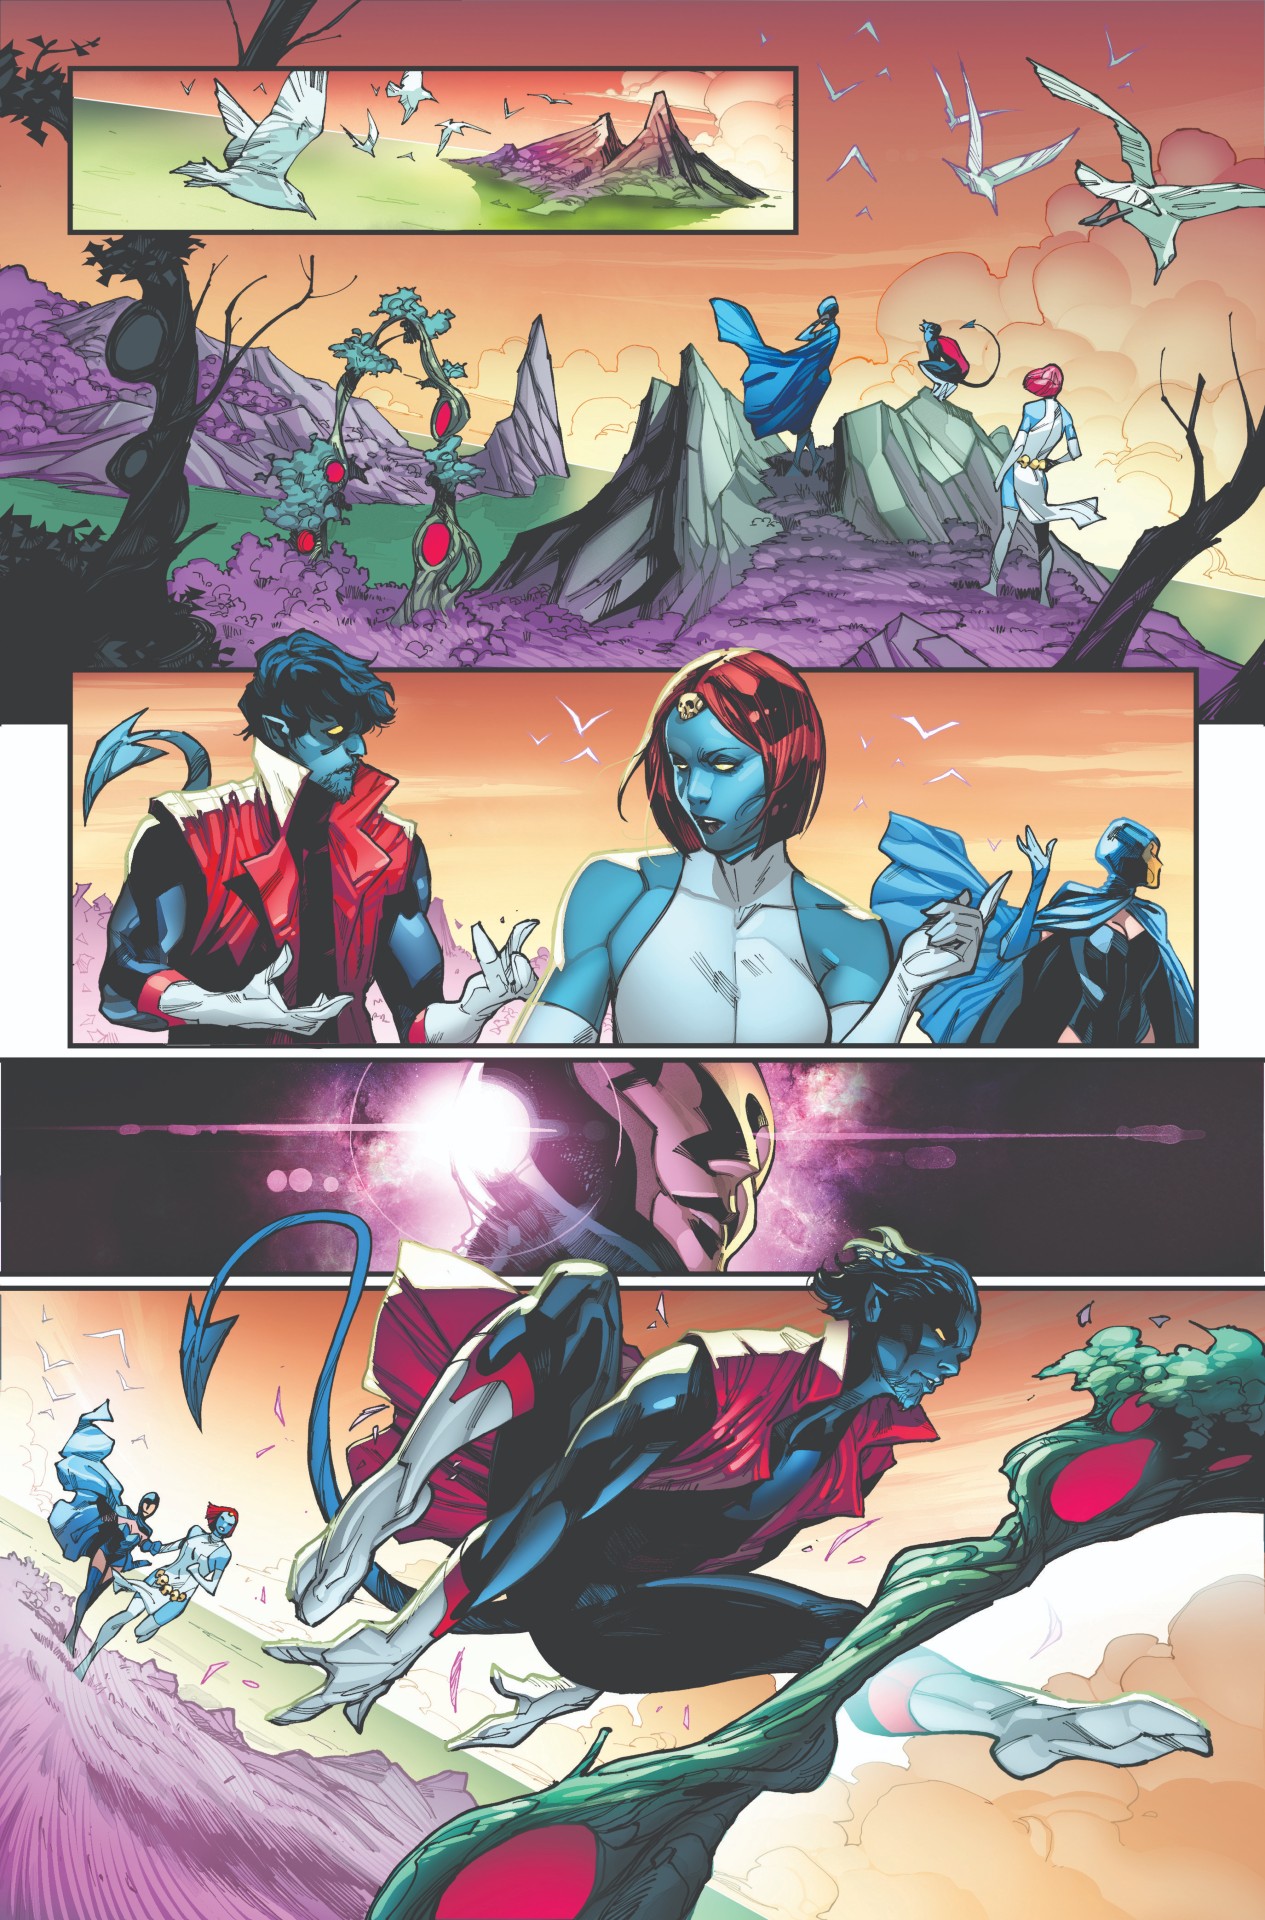 X-Men in Marvel's AXE: Judgment Day